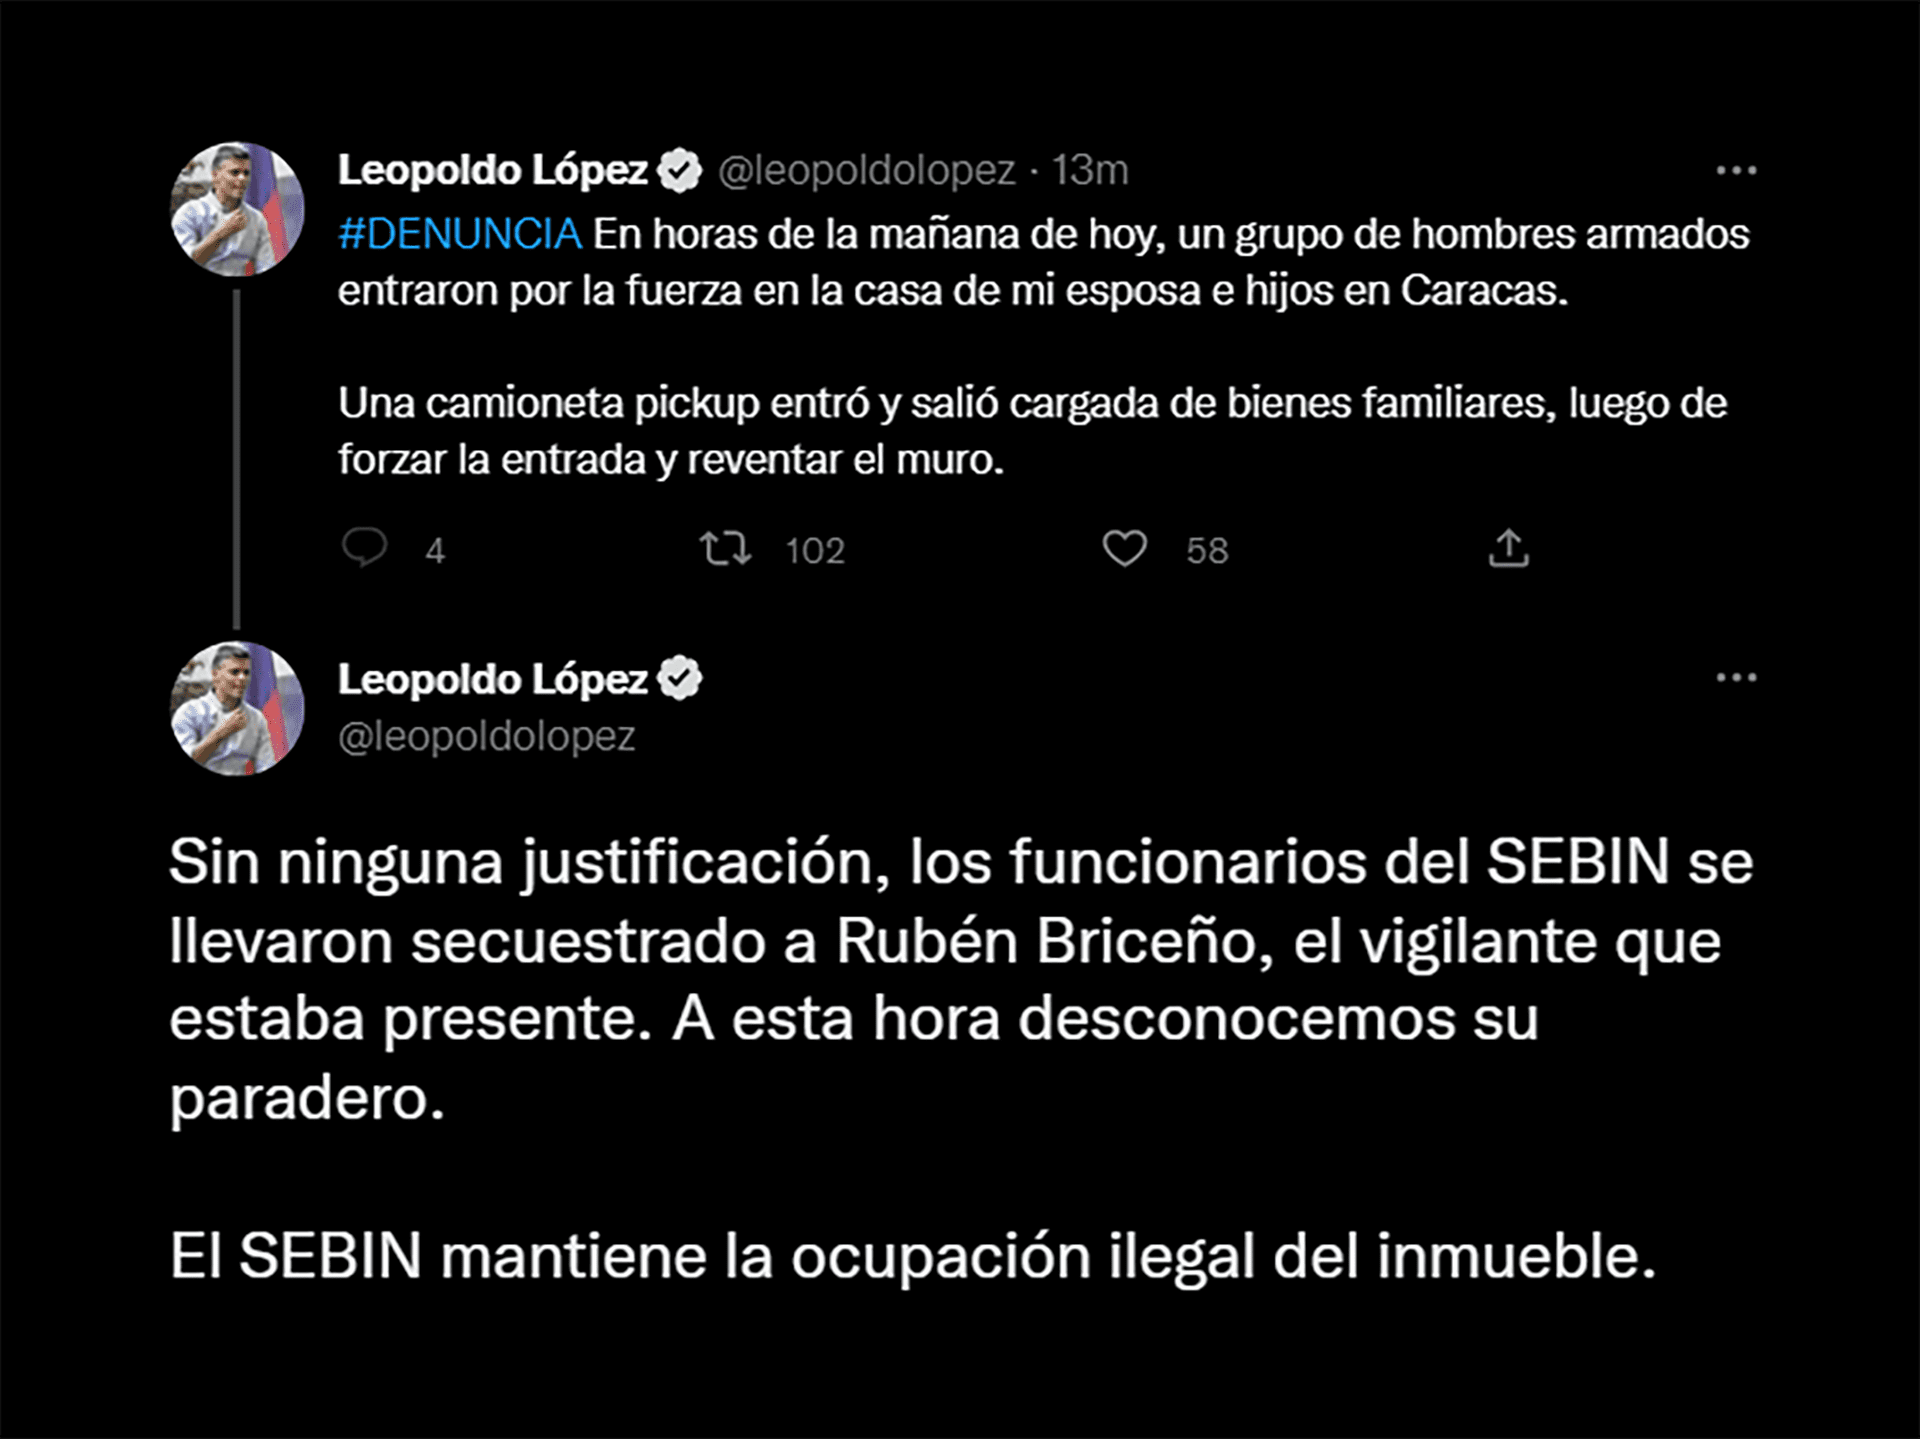 Leopoldo Lopez's complaint this Saturday